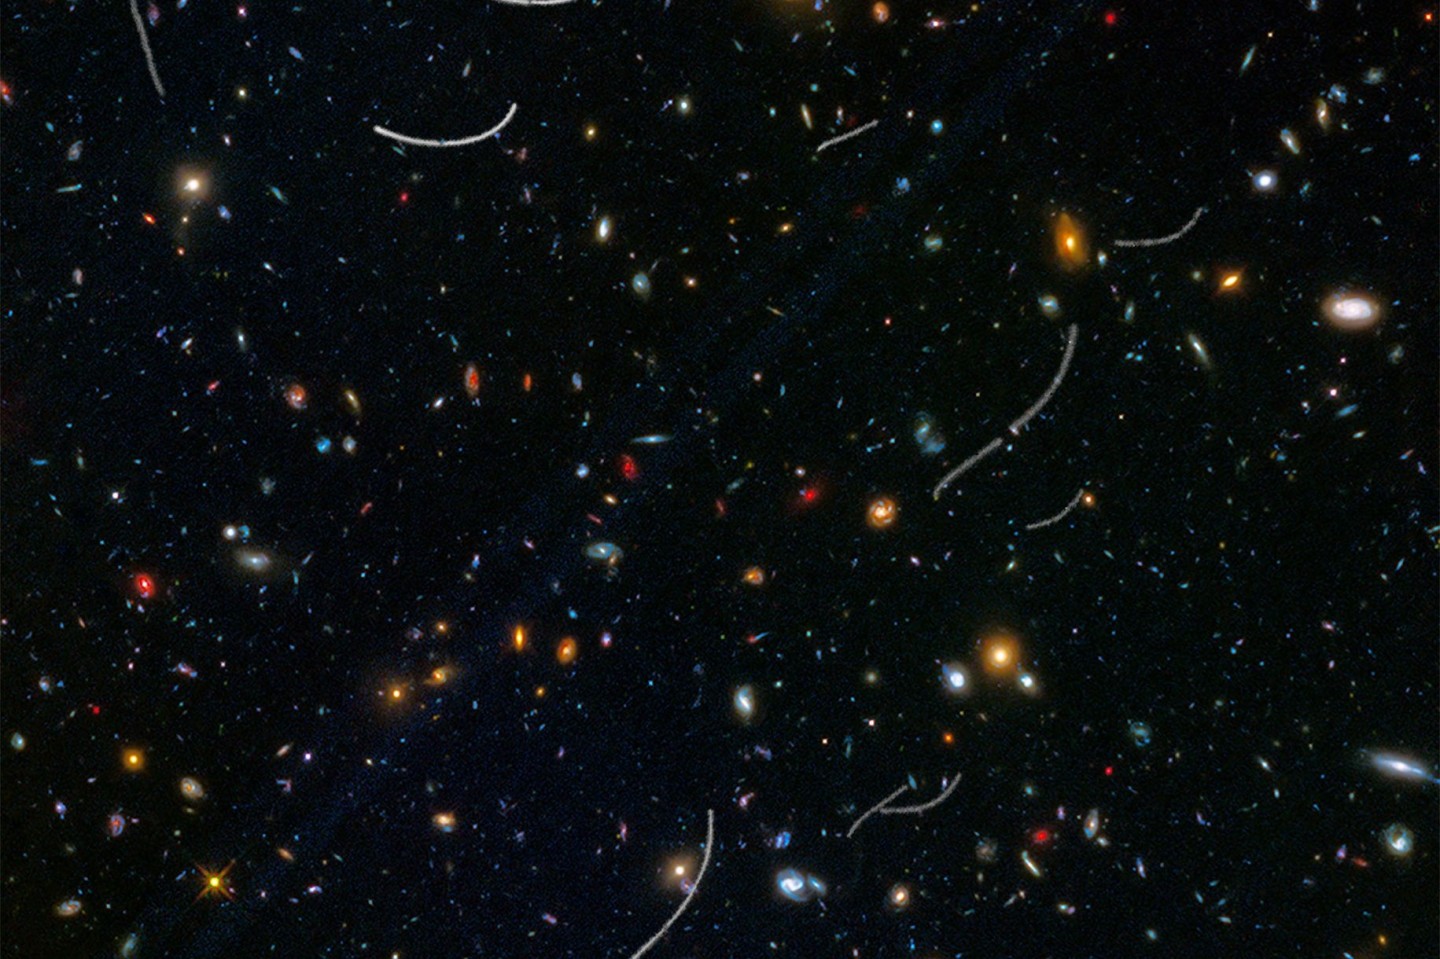 Für das Bild wurden Aufnahmen des Weltraumteleskops Hubble übereinander gelegt. Es zeigt die Bahnen mehrerer Asteroiden (weiße Linien).